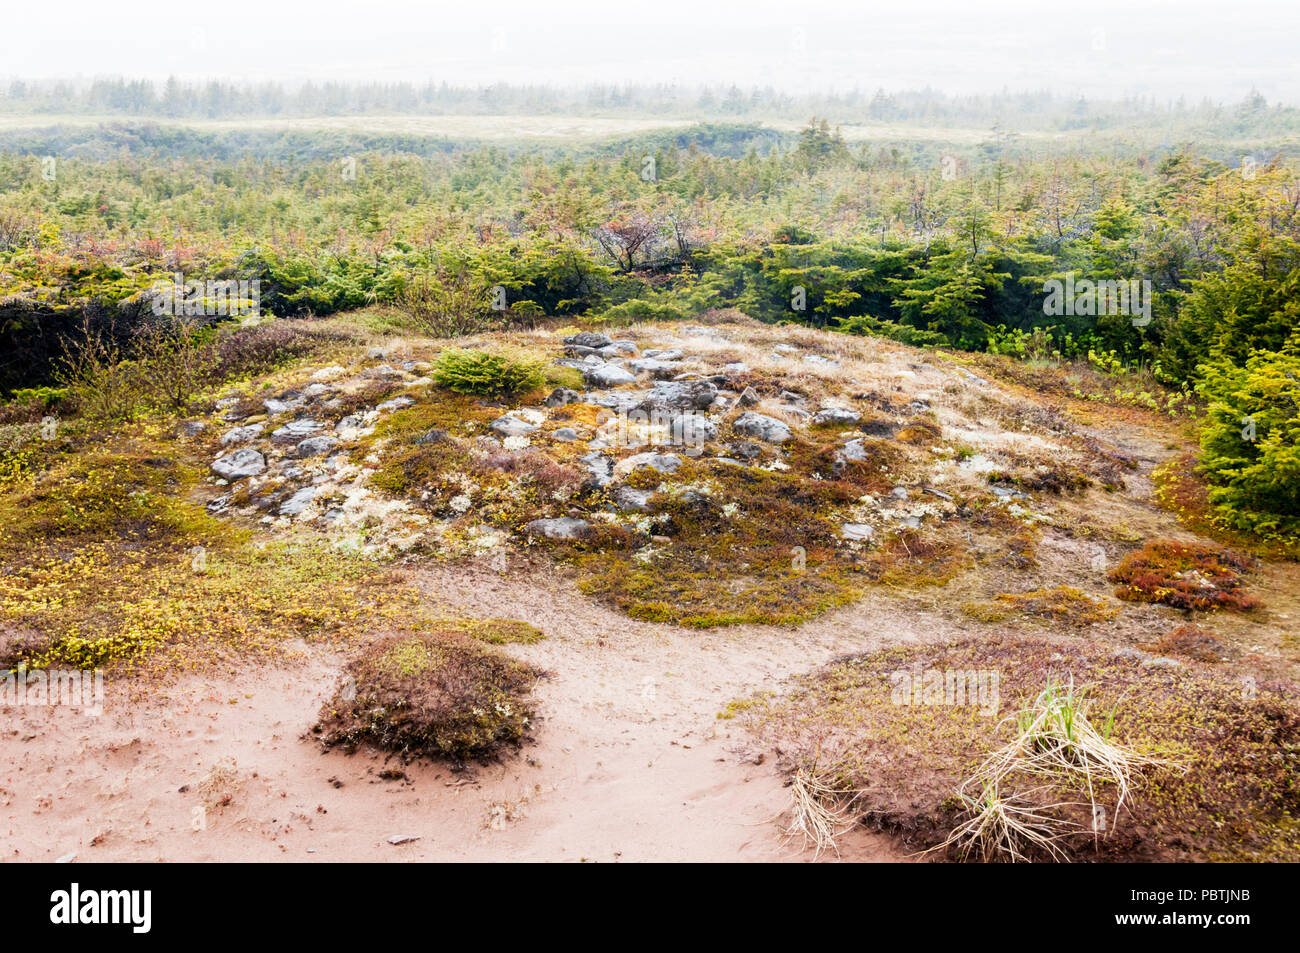 Dieser Hügel an der Küste von Labrador Marken Grabstätte eines maritimen Archaische Kind, c 7500 Jahren gestorben. Früheste bekannte Beerdigung in Nordamerika. Stockfoto